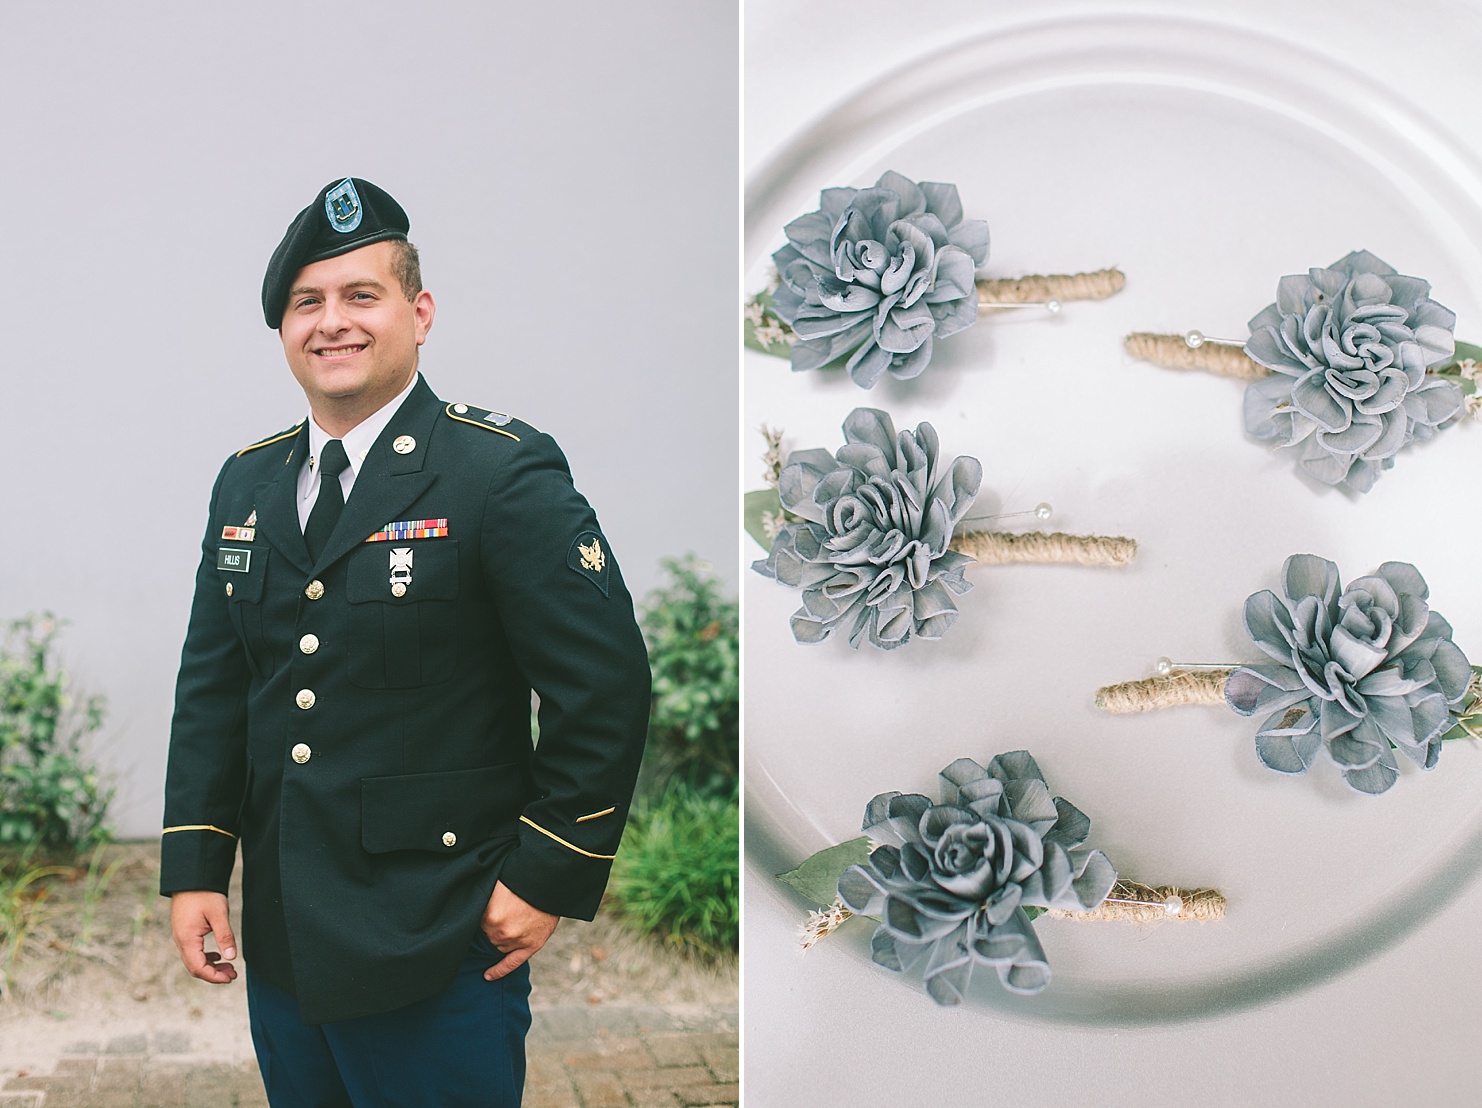 Army groom on wedding day